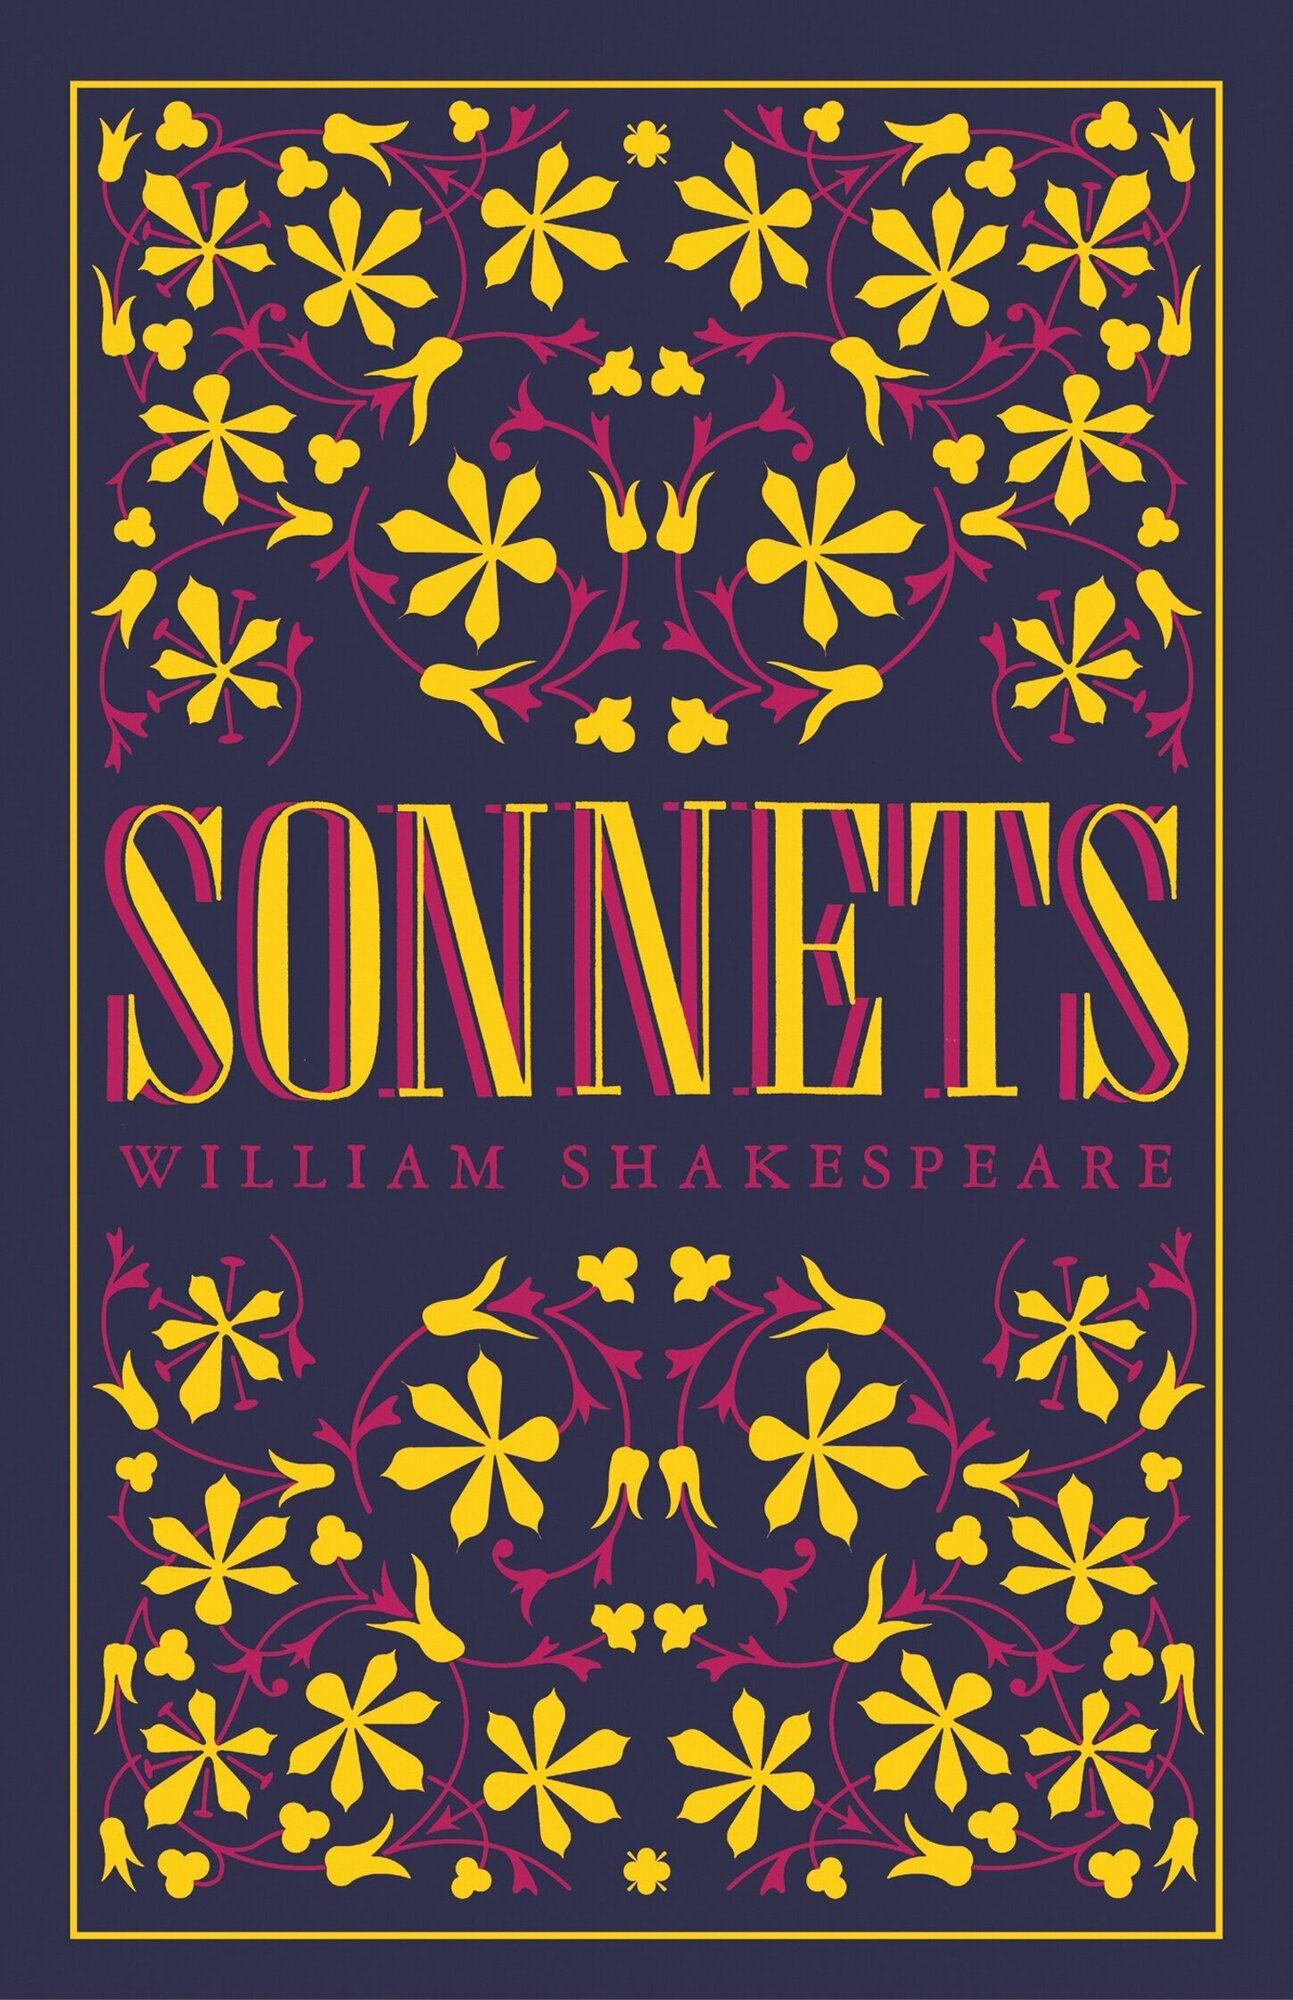 Sonnets (Шекспир Уильям) - фото №1